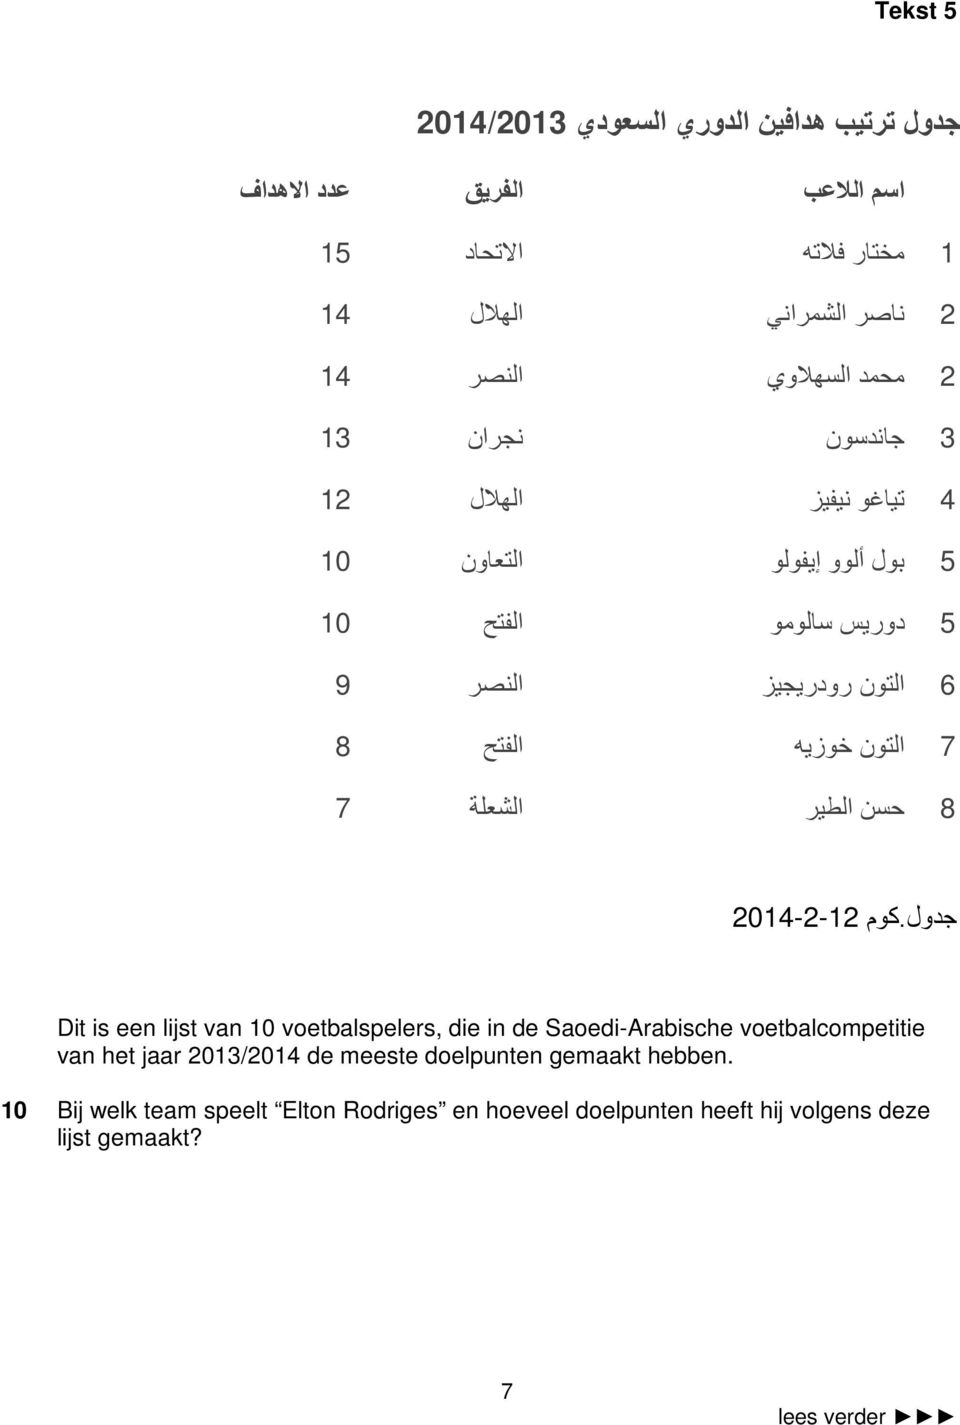 آم 2014-2-12 Dit is een lijst van 10 voetbalspelers, die in de Saoedi-Arabische voetbalcompetitie van het jaar 2013/2014 de